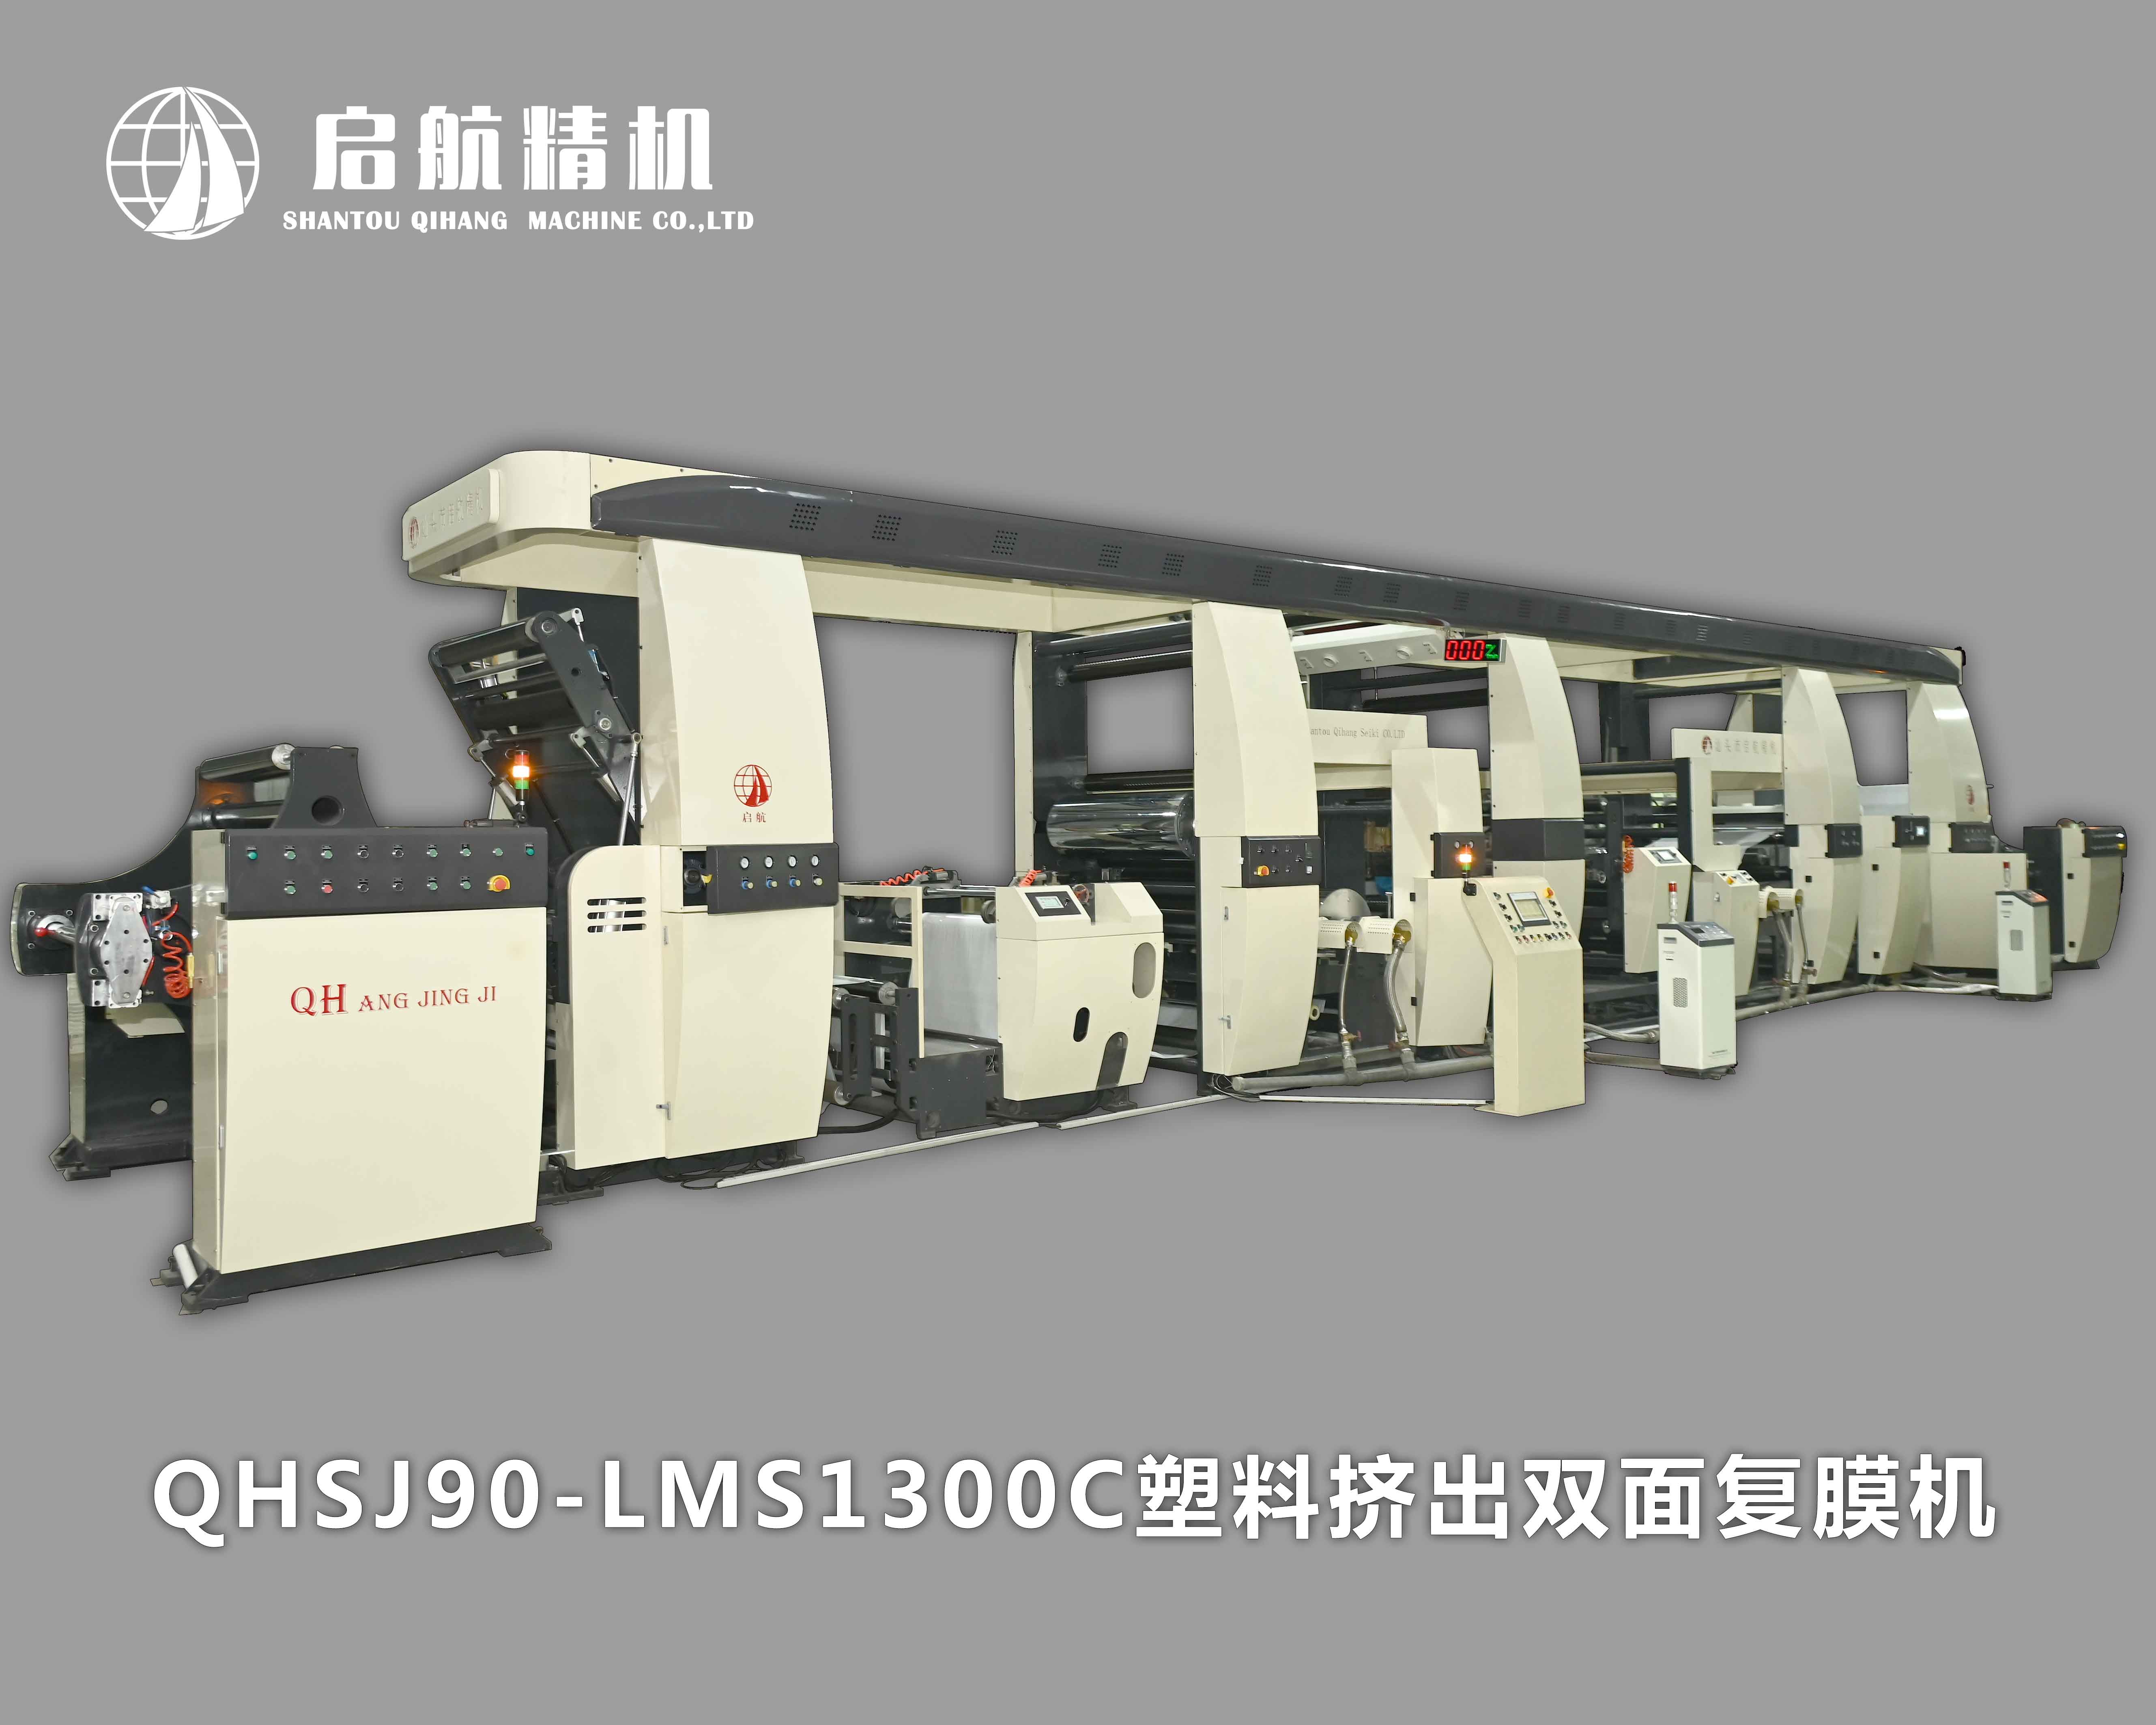 QHSJ90-LMS1300C 塑料挤出双面复膜机